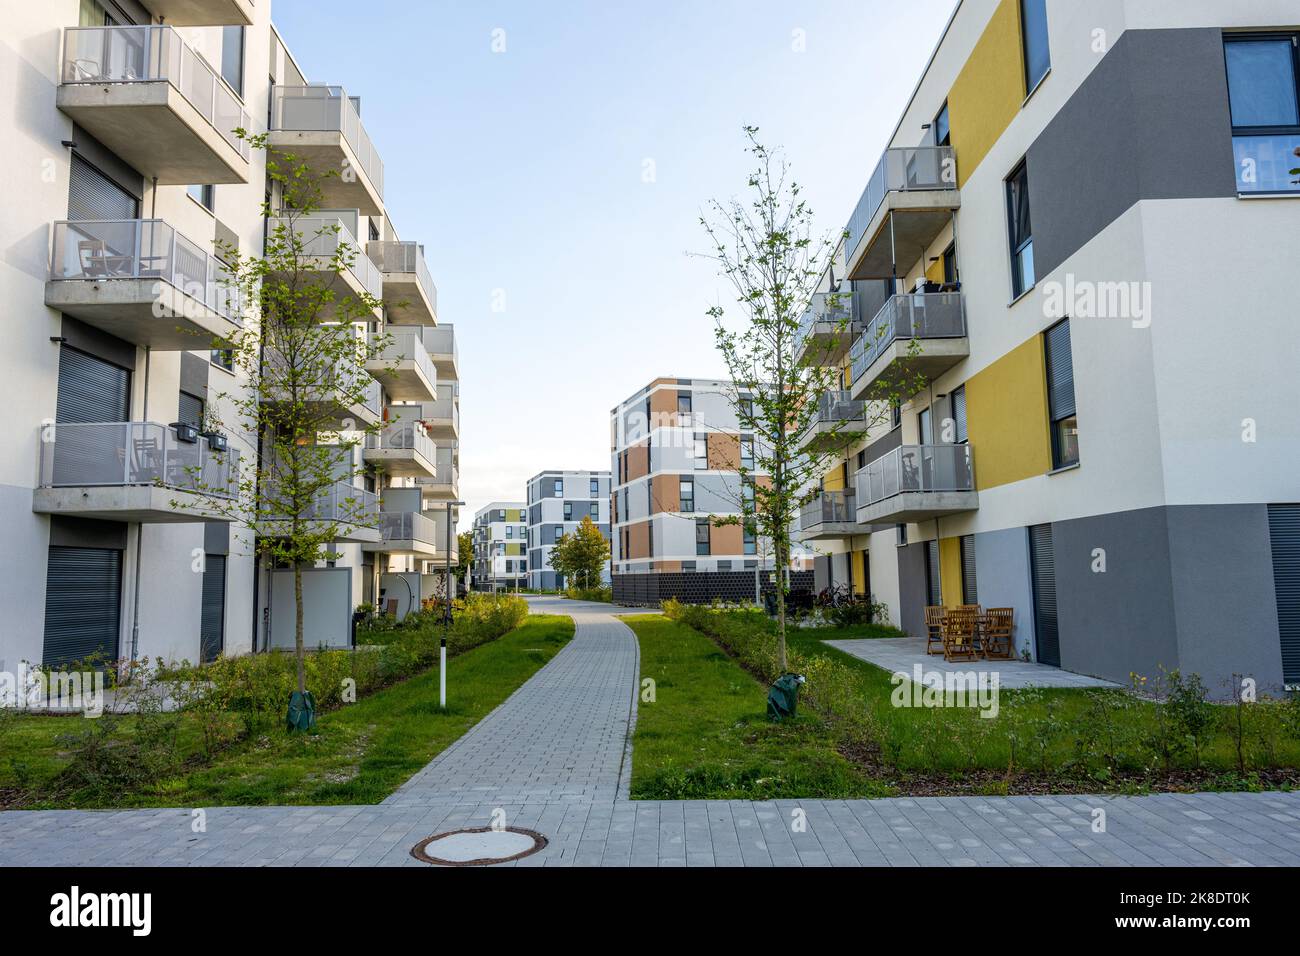 New housing development area seen in Berlin, Germany Stock Photo